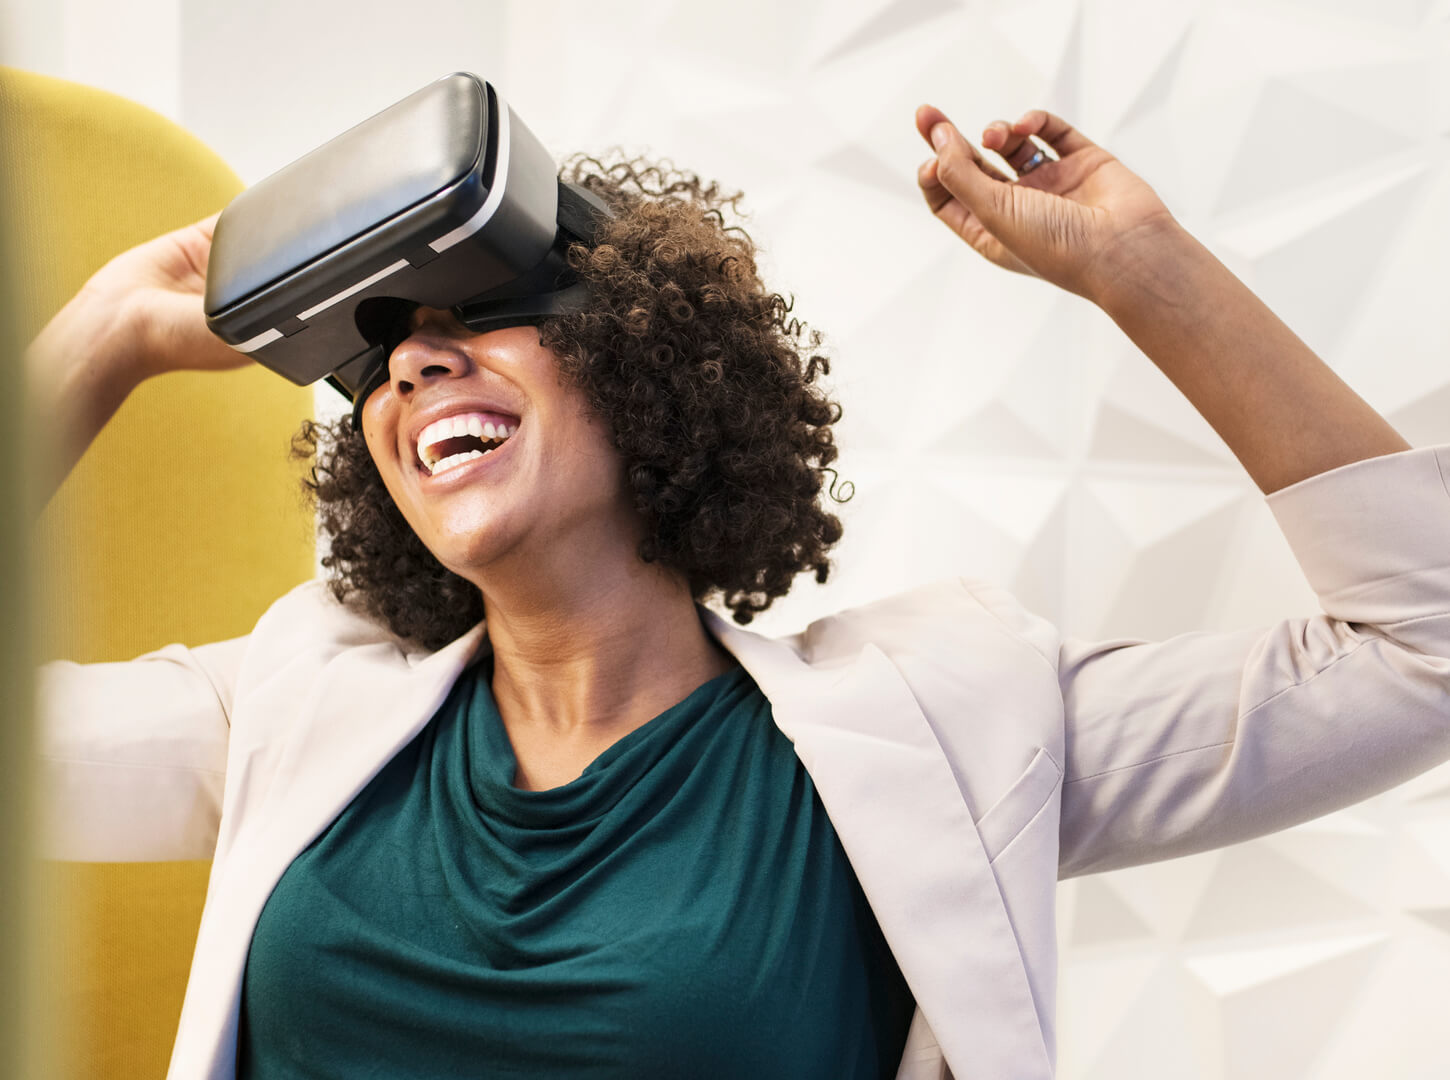 Hoe werkt een Virtual Reality bril? Een antwoord op de vraag ‘hoe werkt een Virtual Reality bril’.